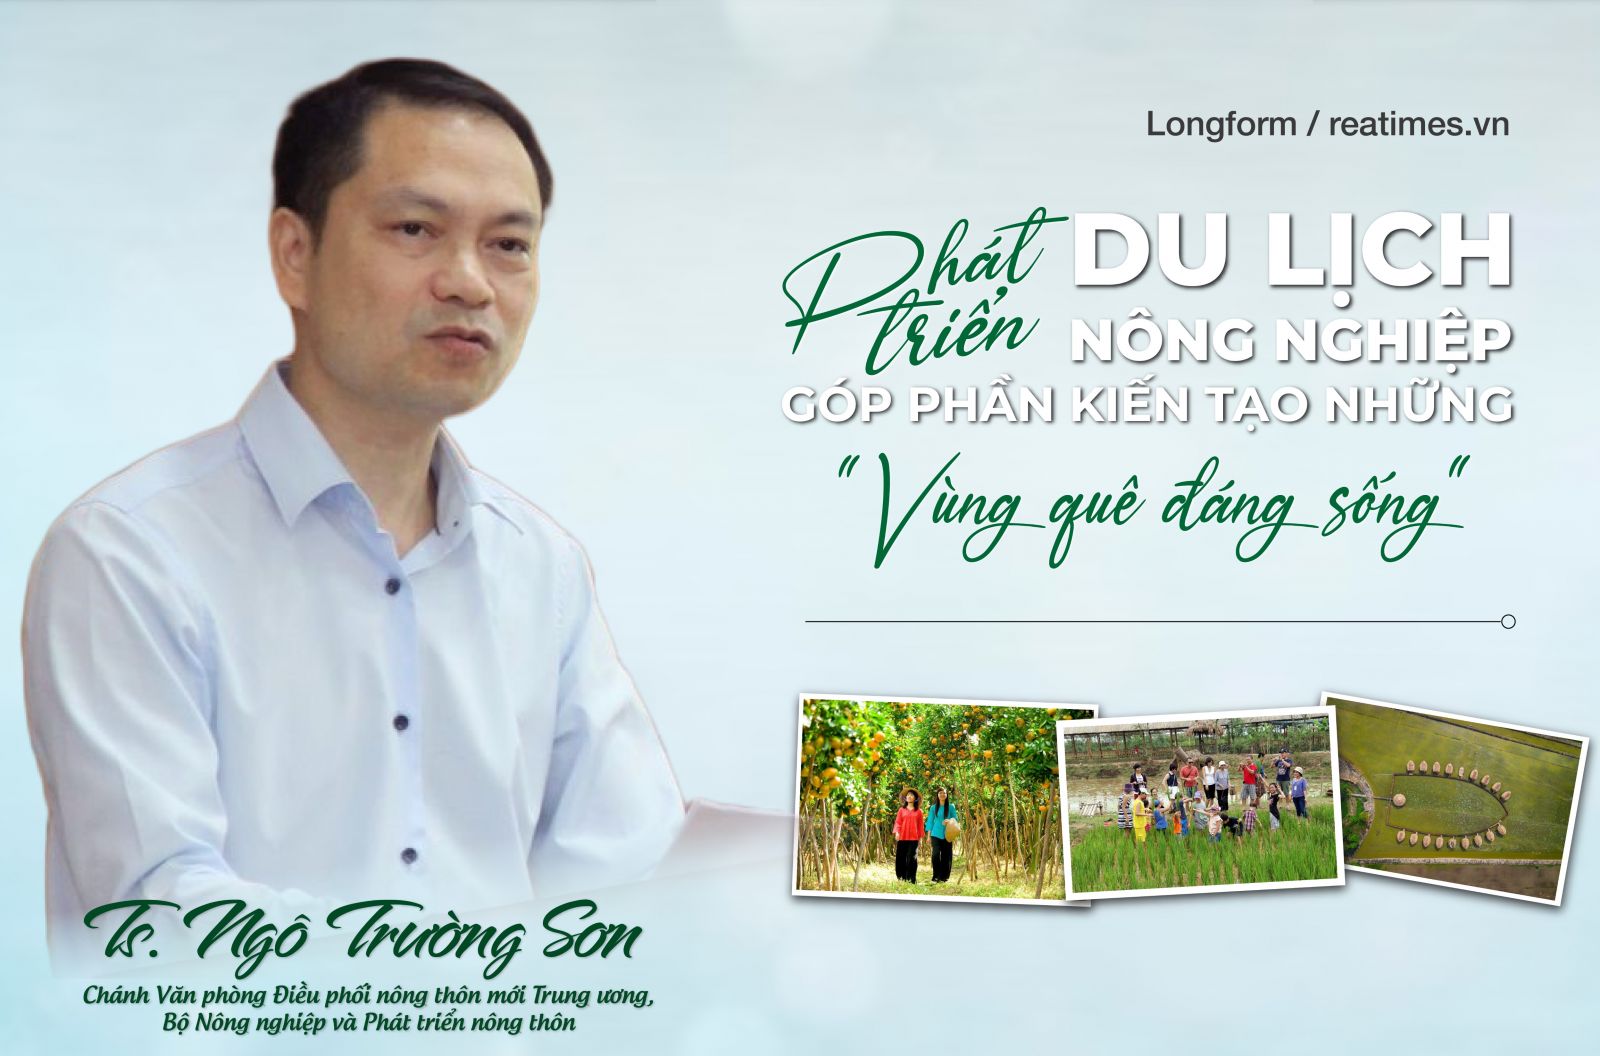 Nâng cao hiệu quả phát triển du lịch nông nghiệp, nông thôn Việt Nam